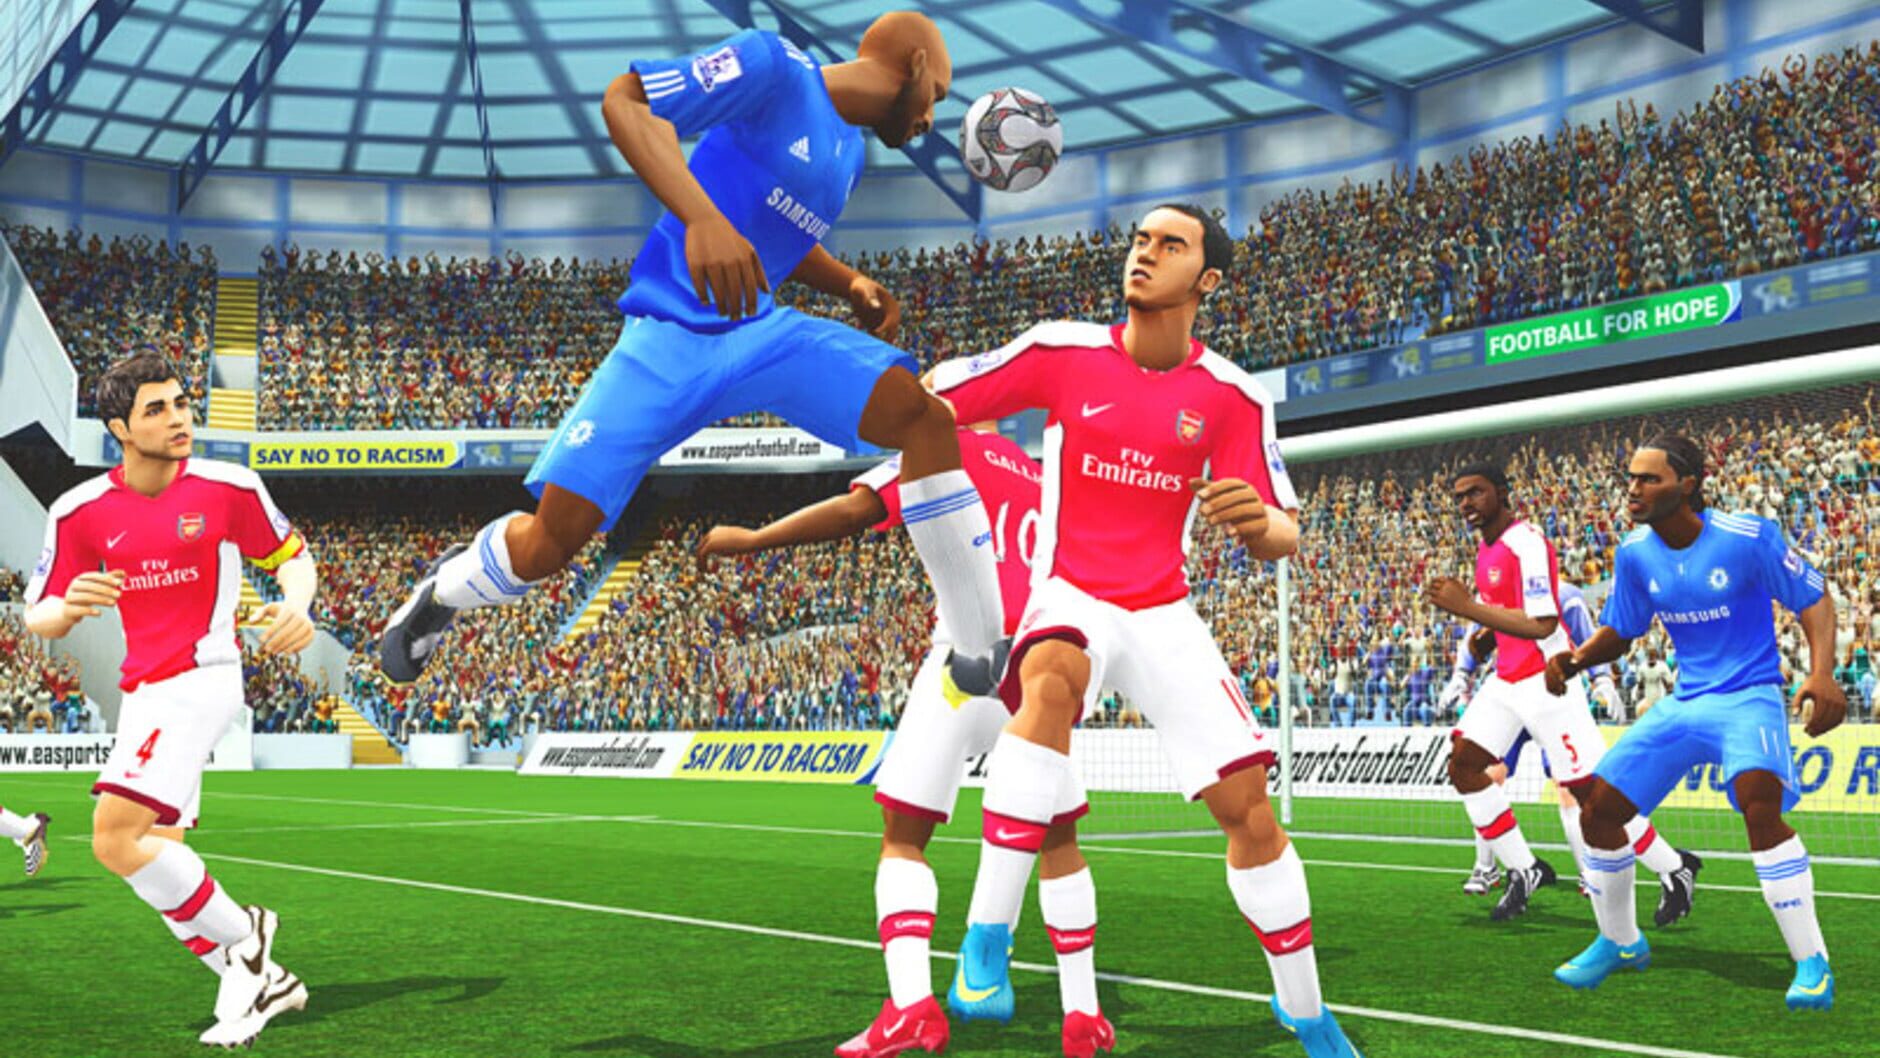 Screenshot for FIFA Soccer 10